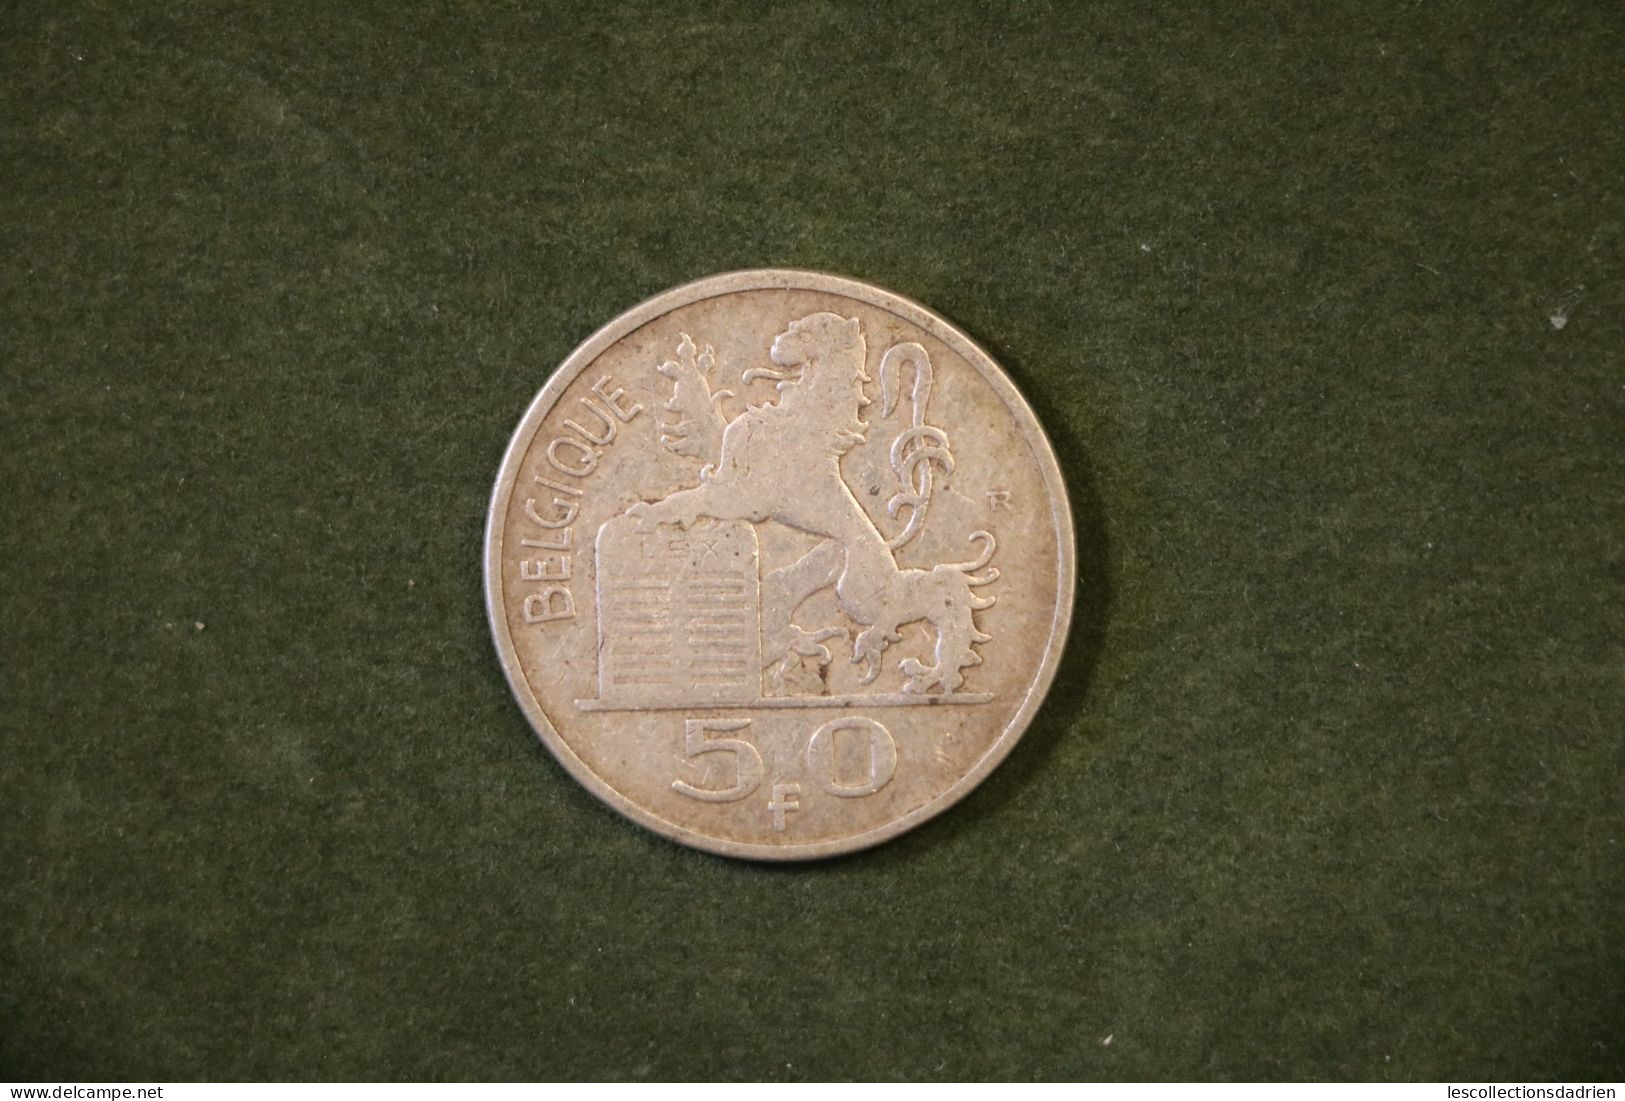 Pièce En Argent Belgique 50 Francs 1951 FR -  Belgian Silver Coin - 50 Frank